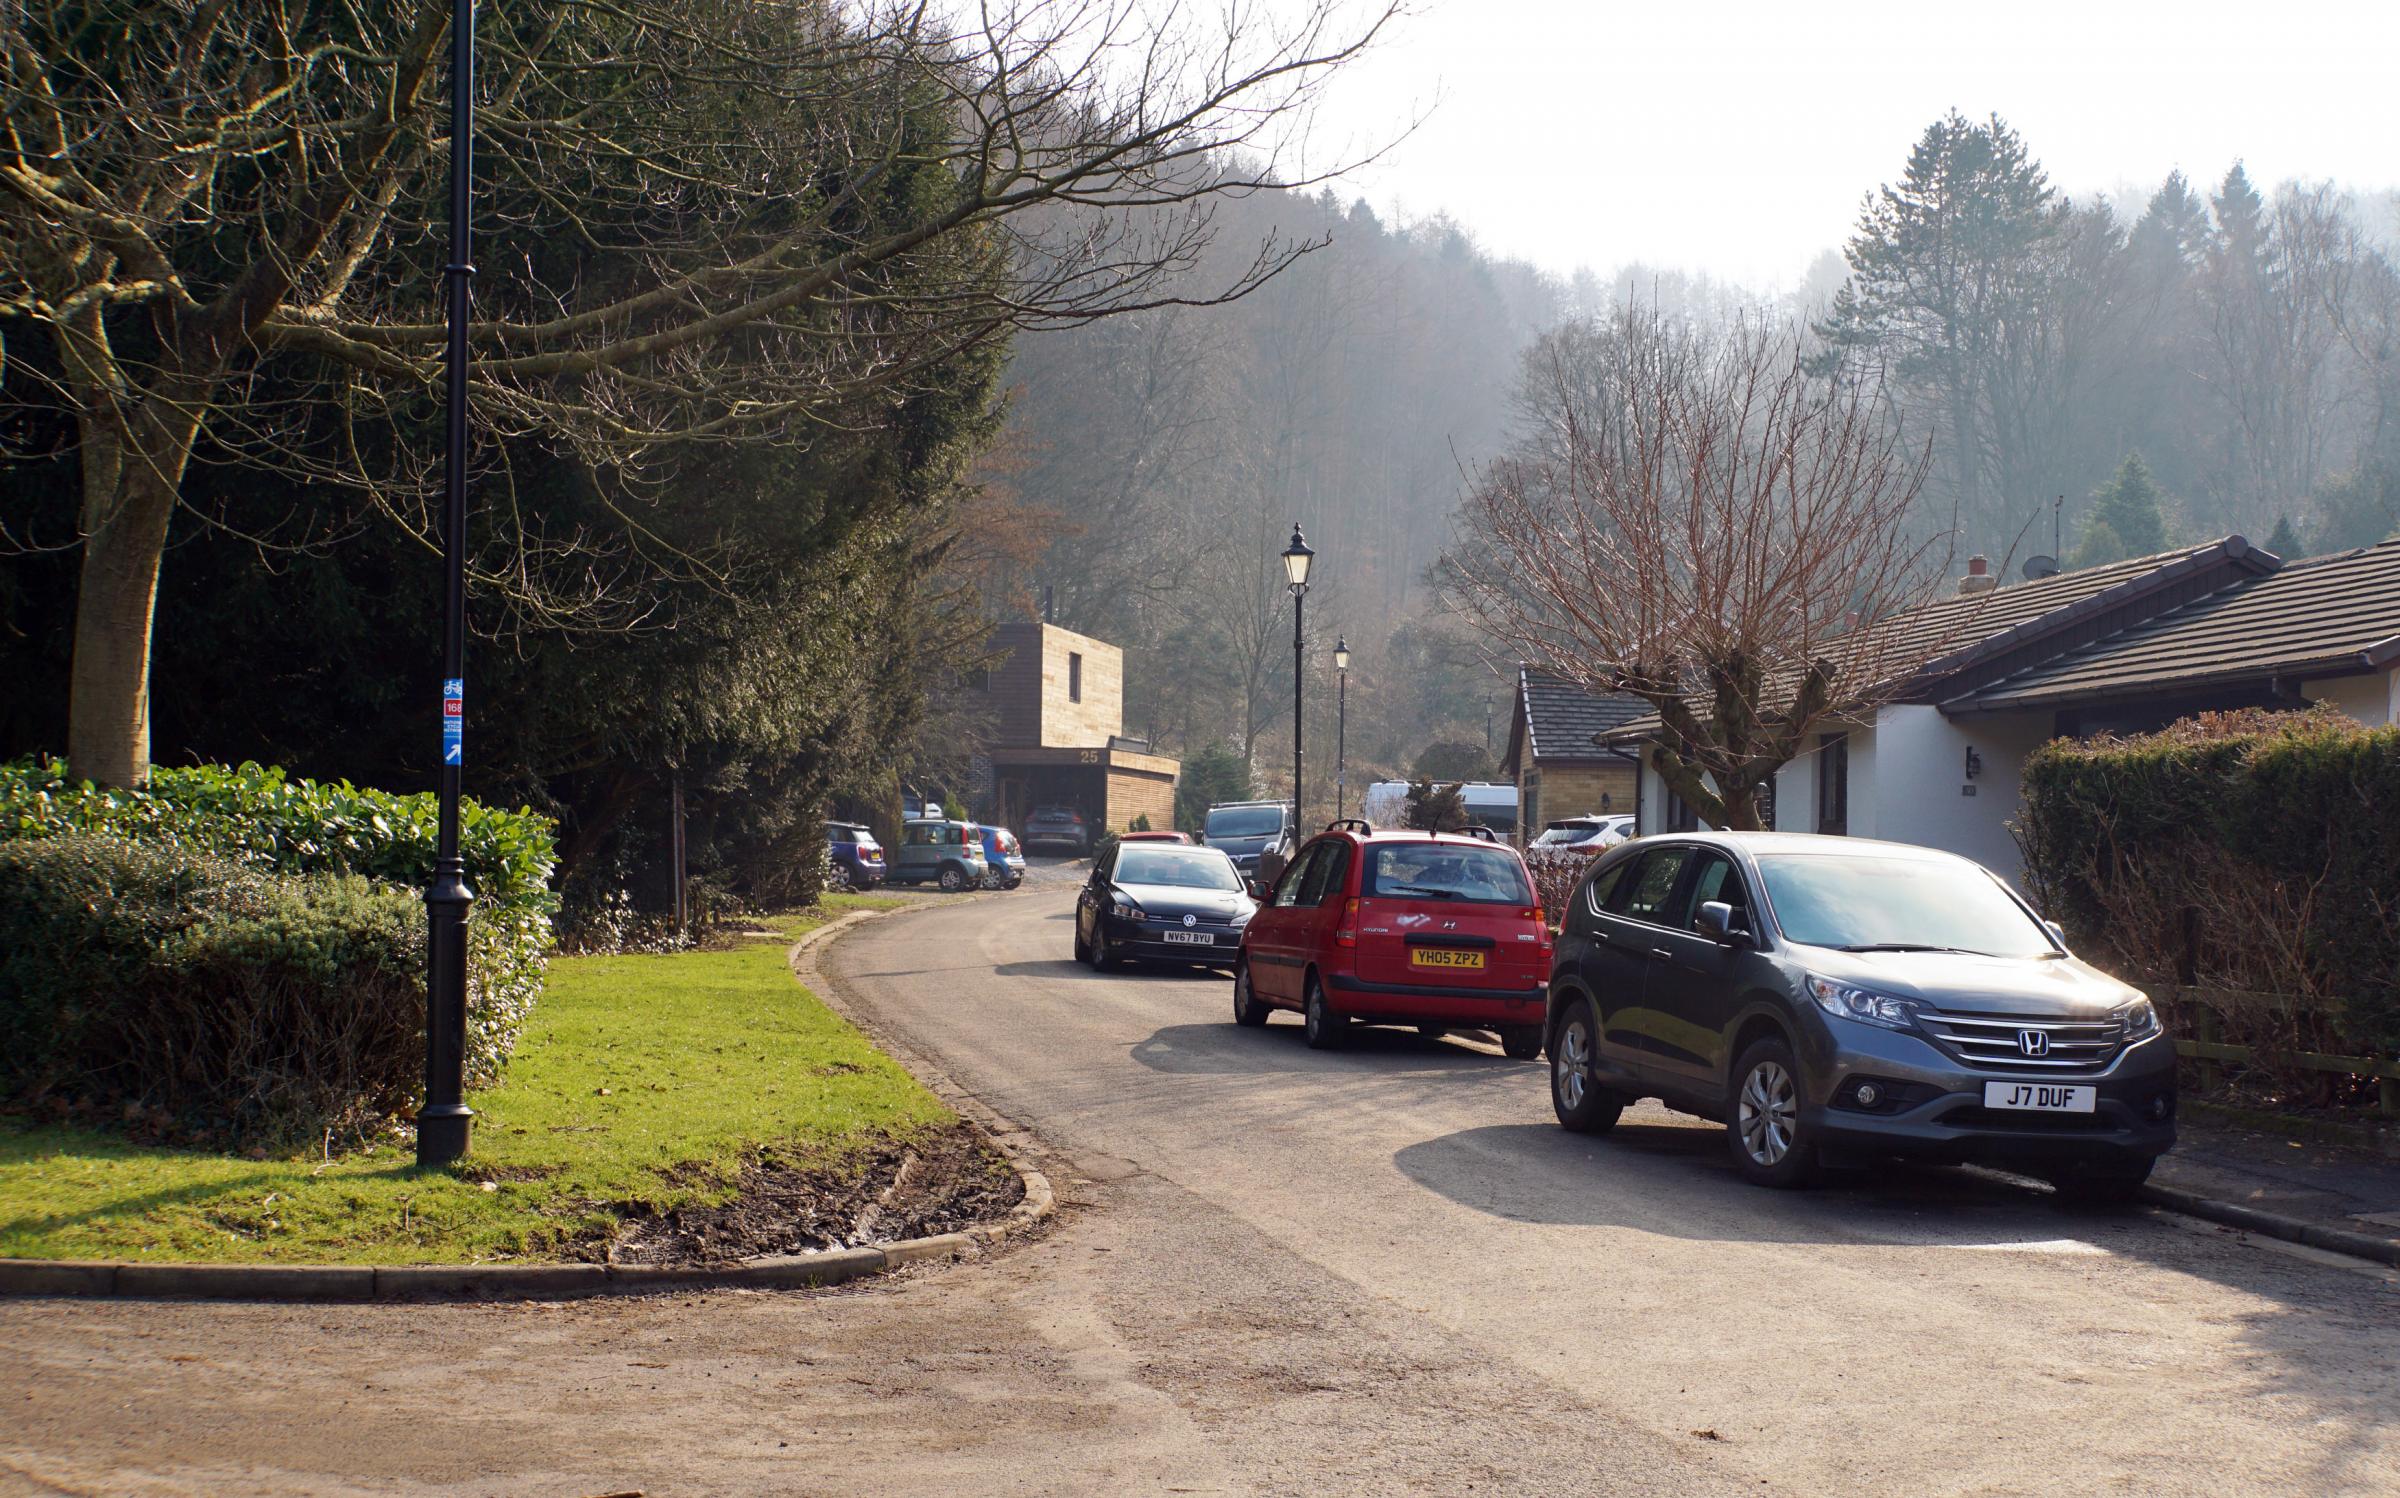 Car parking in Hutton Village on a fine day